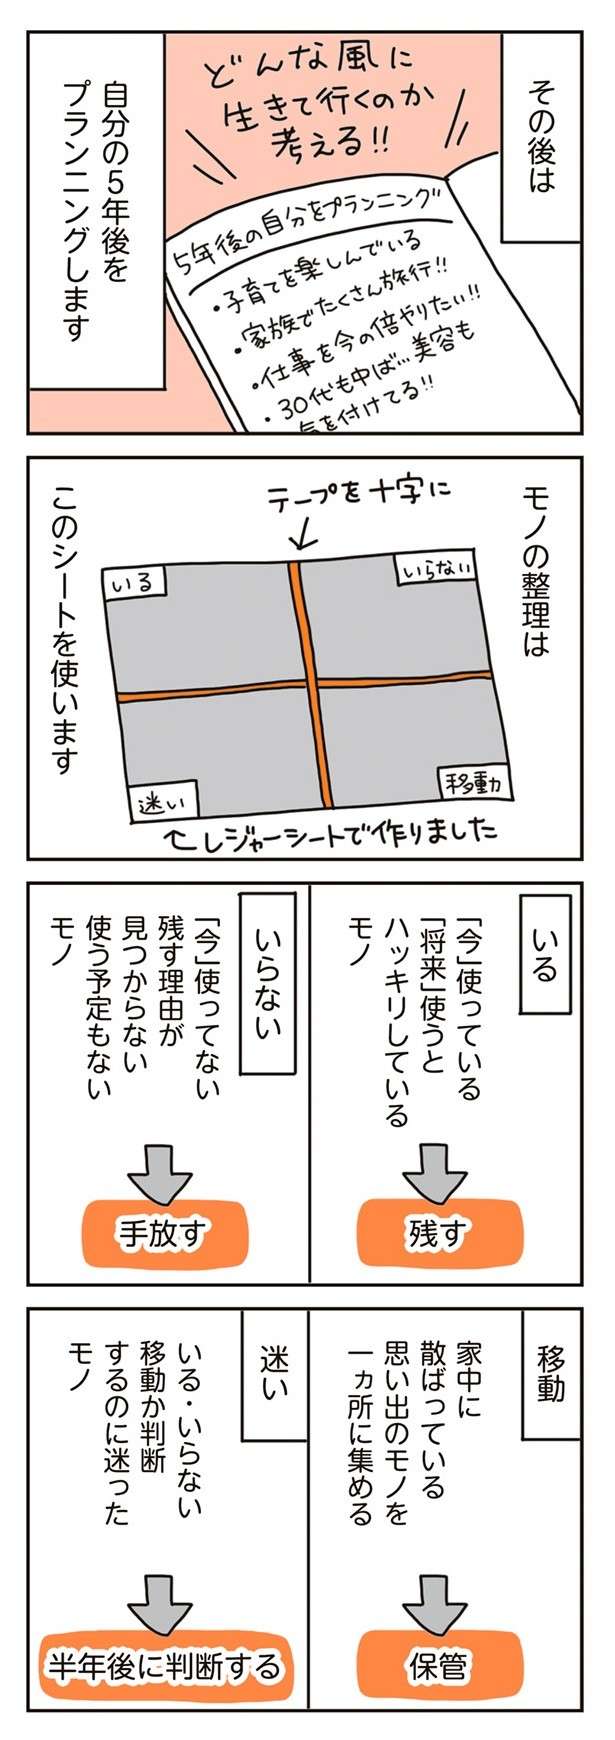 chintaika_mochiieka12-4.jpg